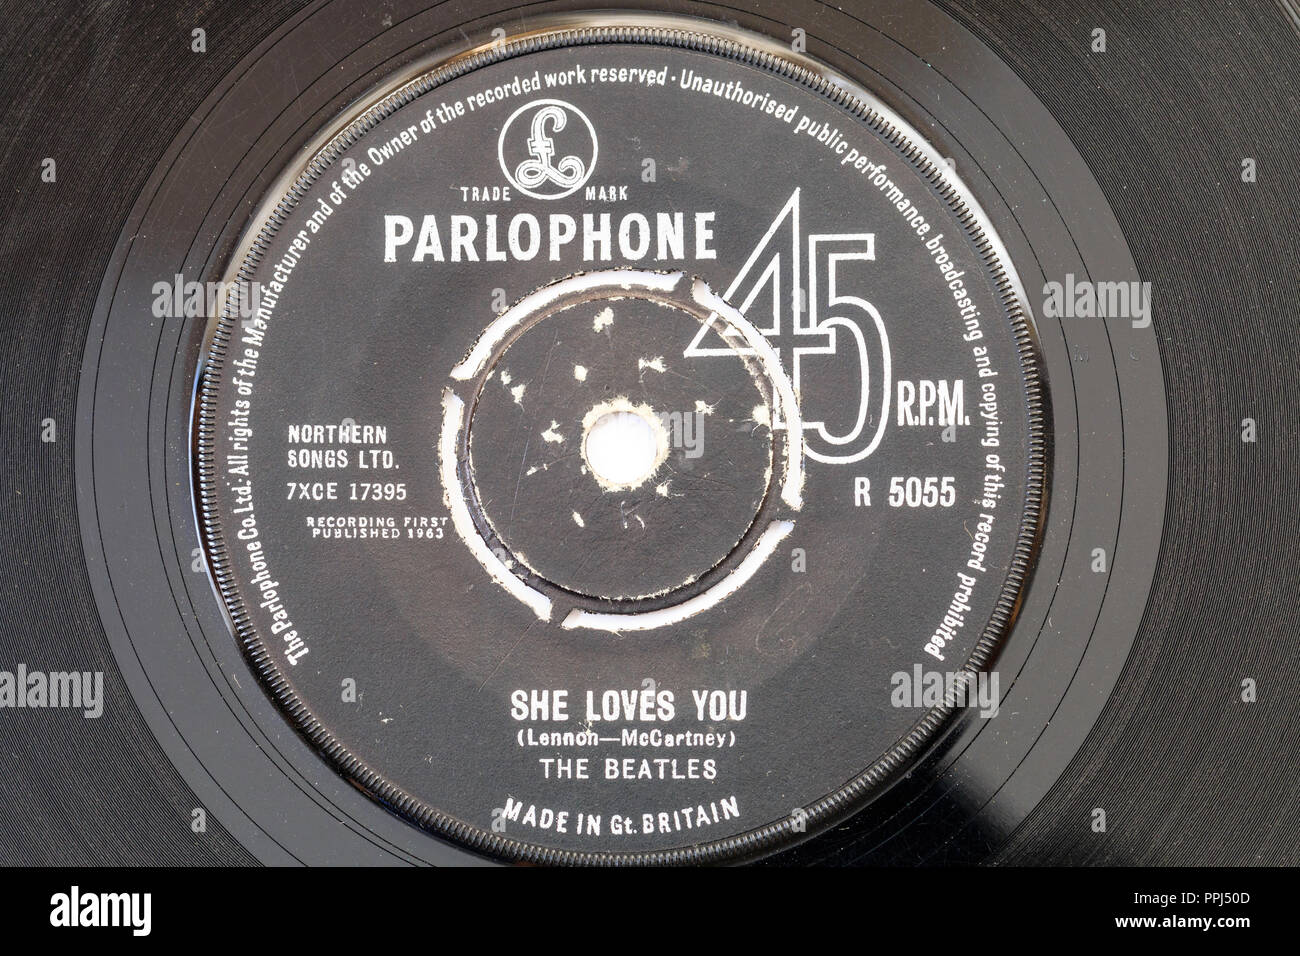 45 single track record su etichetta Parlophone. I Beatles, "egli vi ama" da Lennon e McCartney. 1963 R5055 Foto Stock